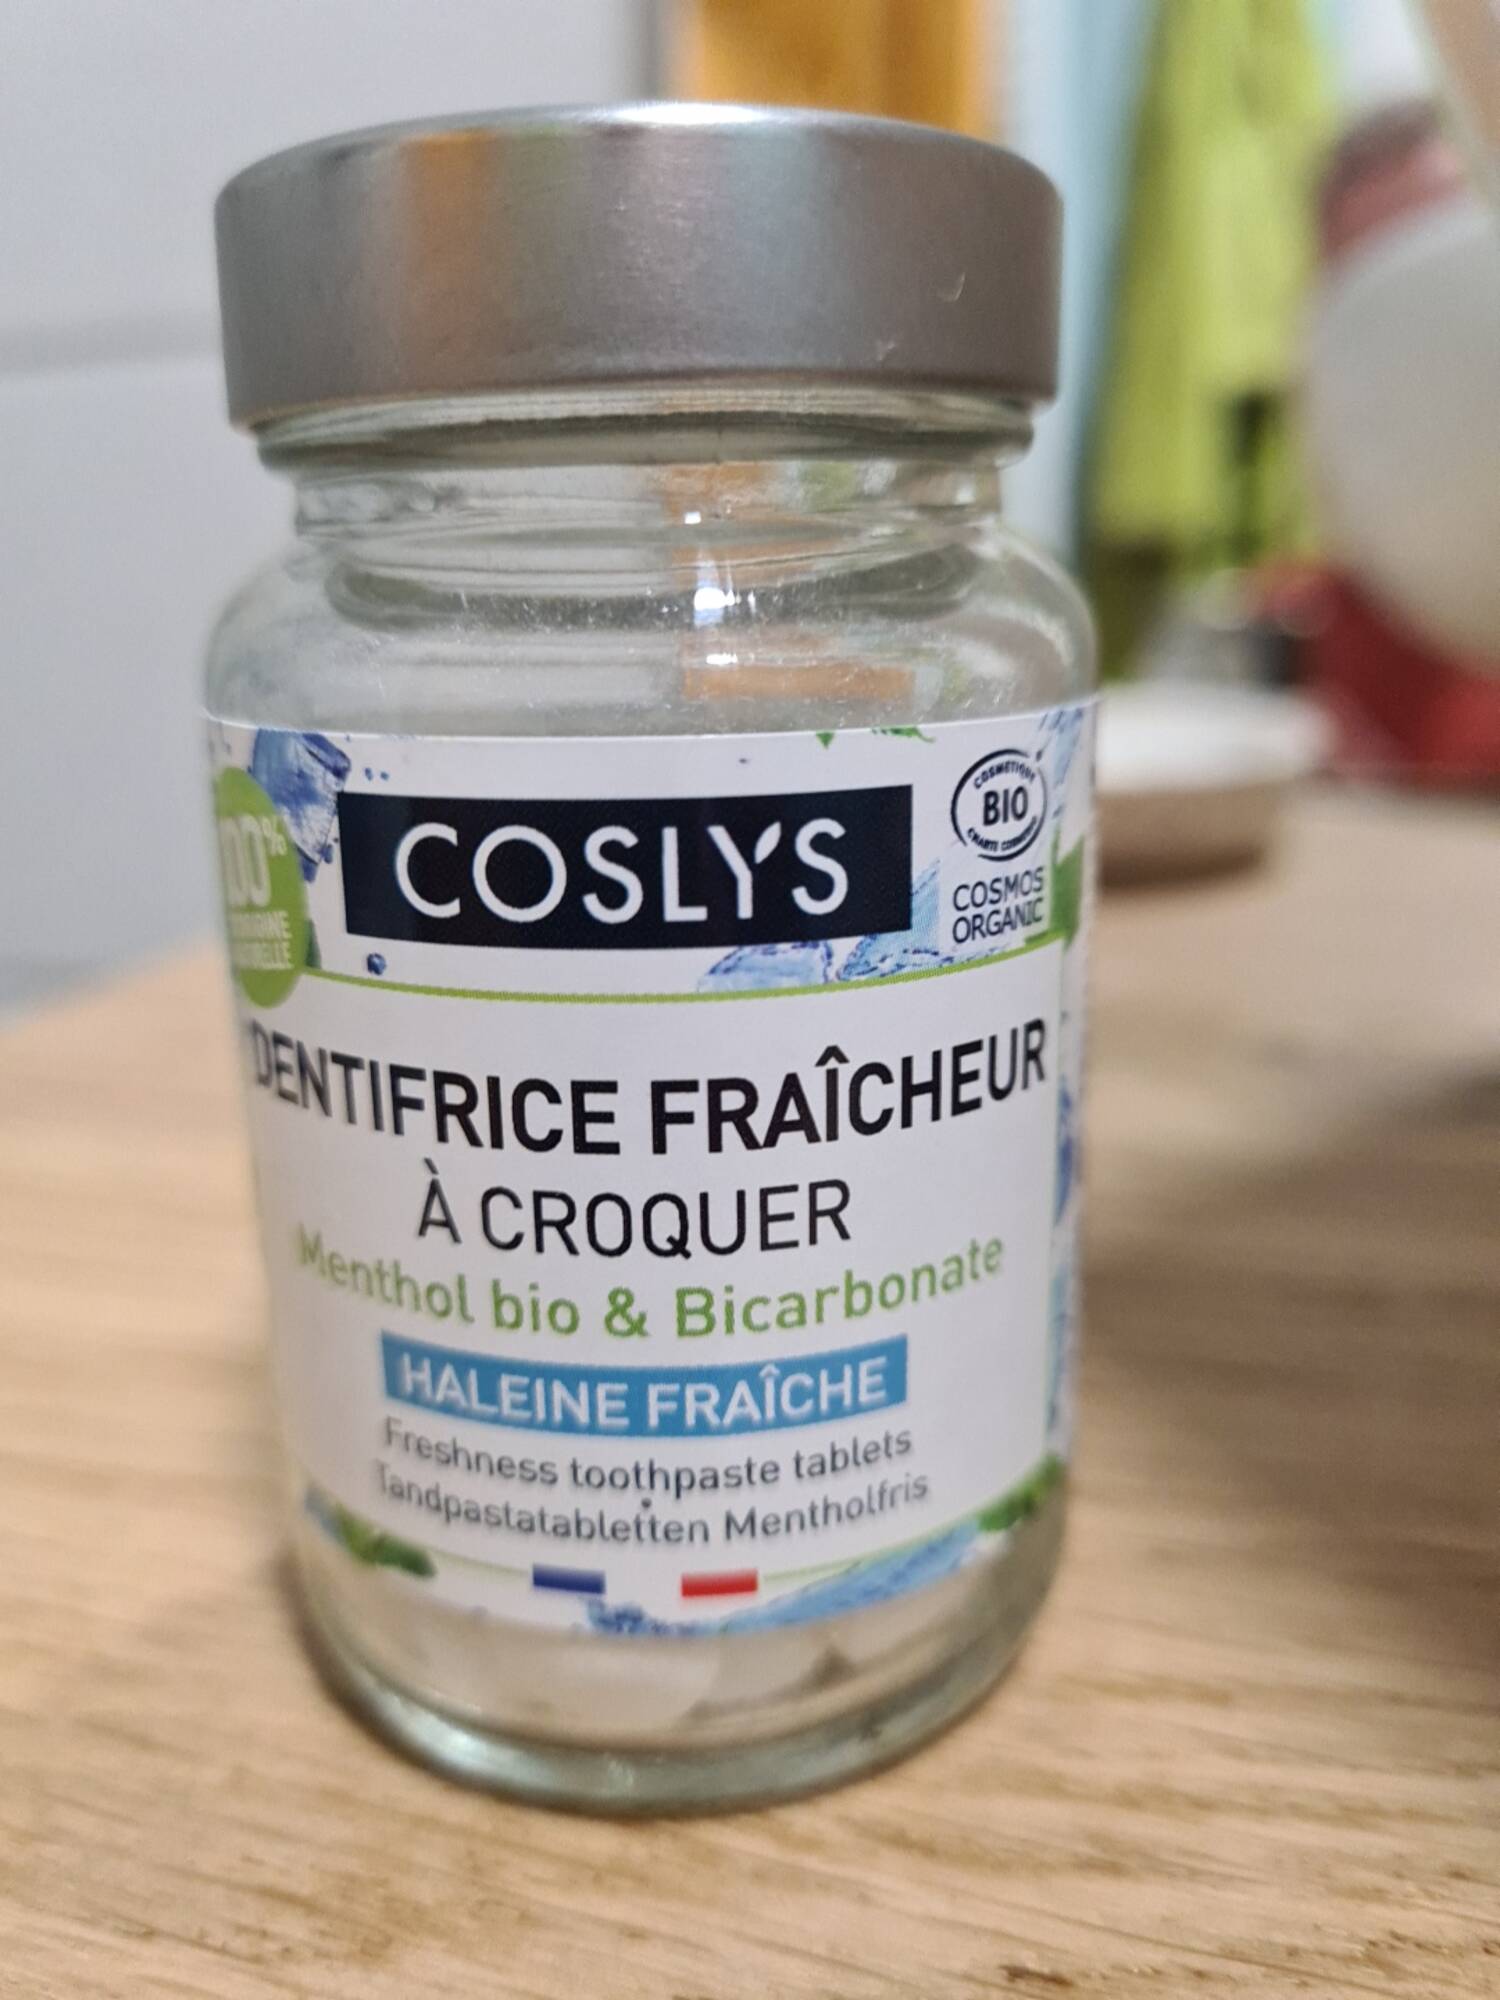 COSLYS - Dentifrice fraîcheur à croquer